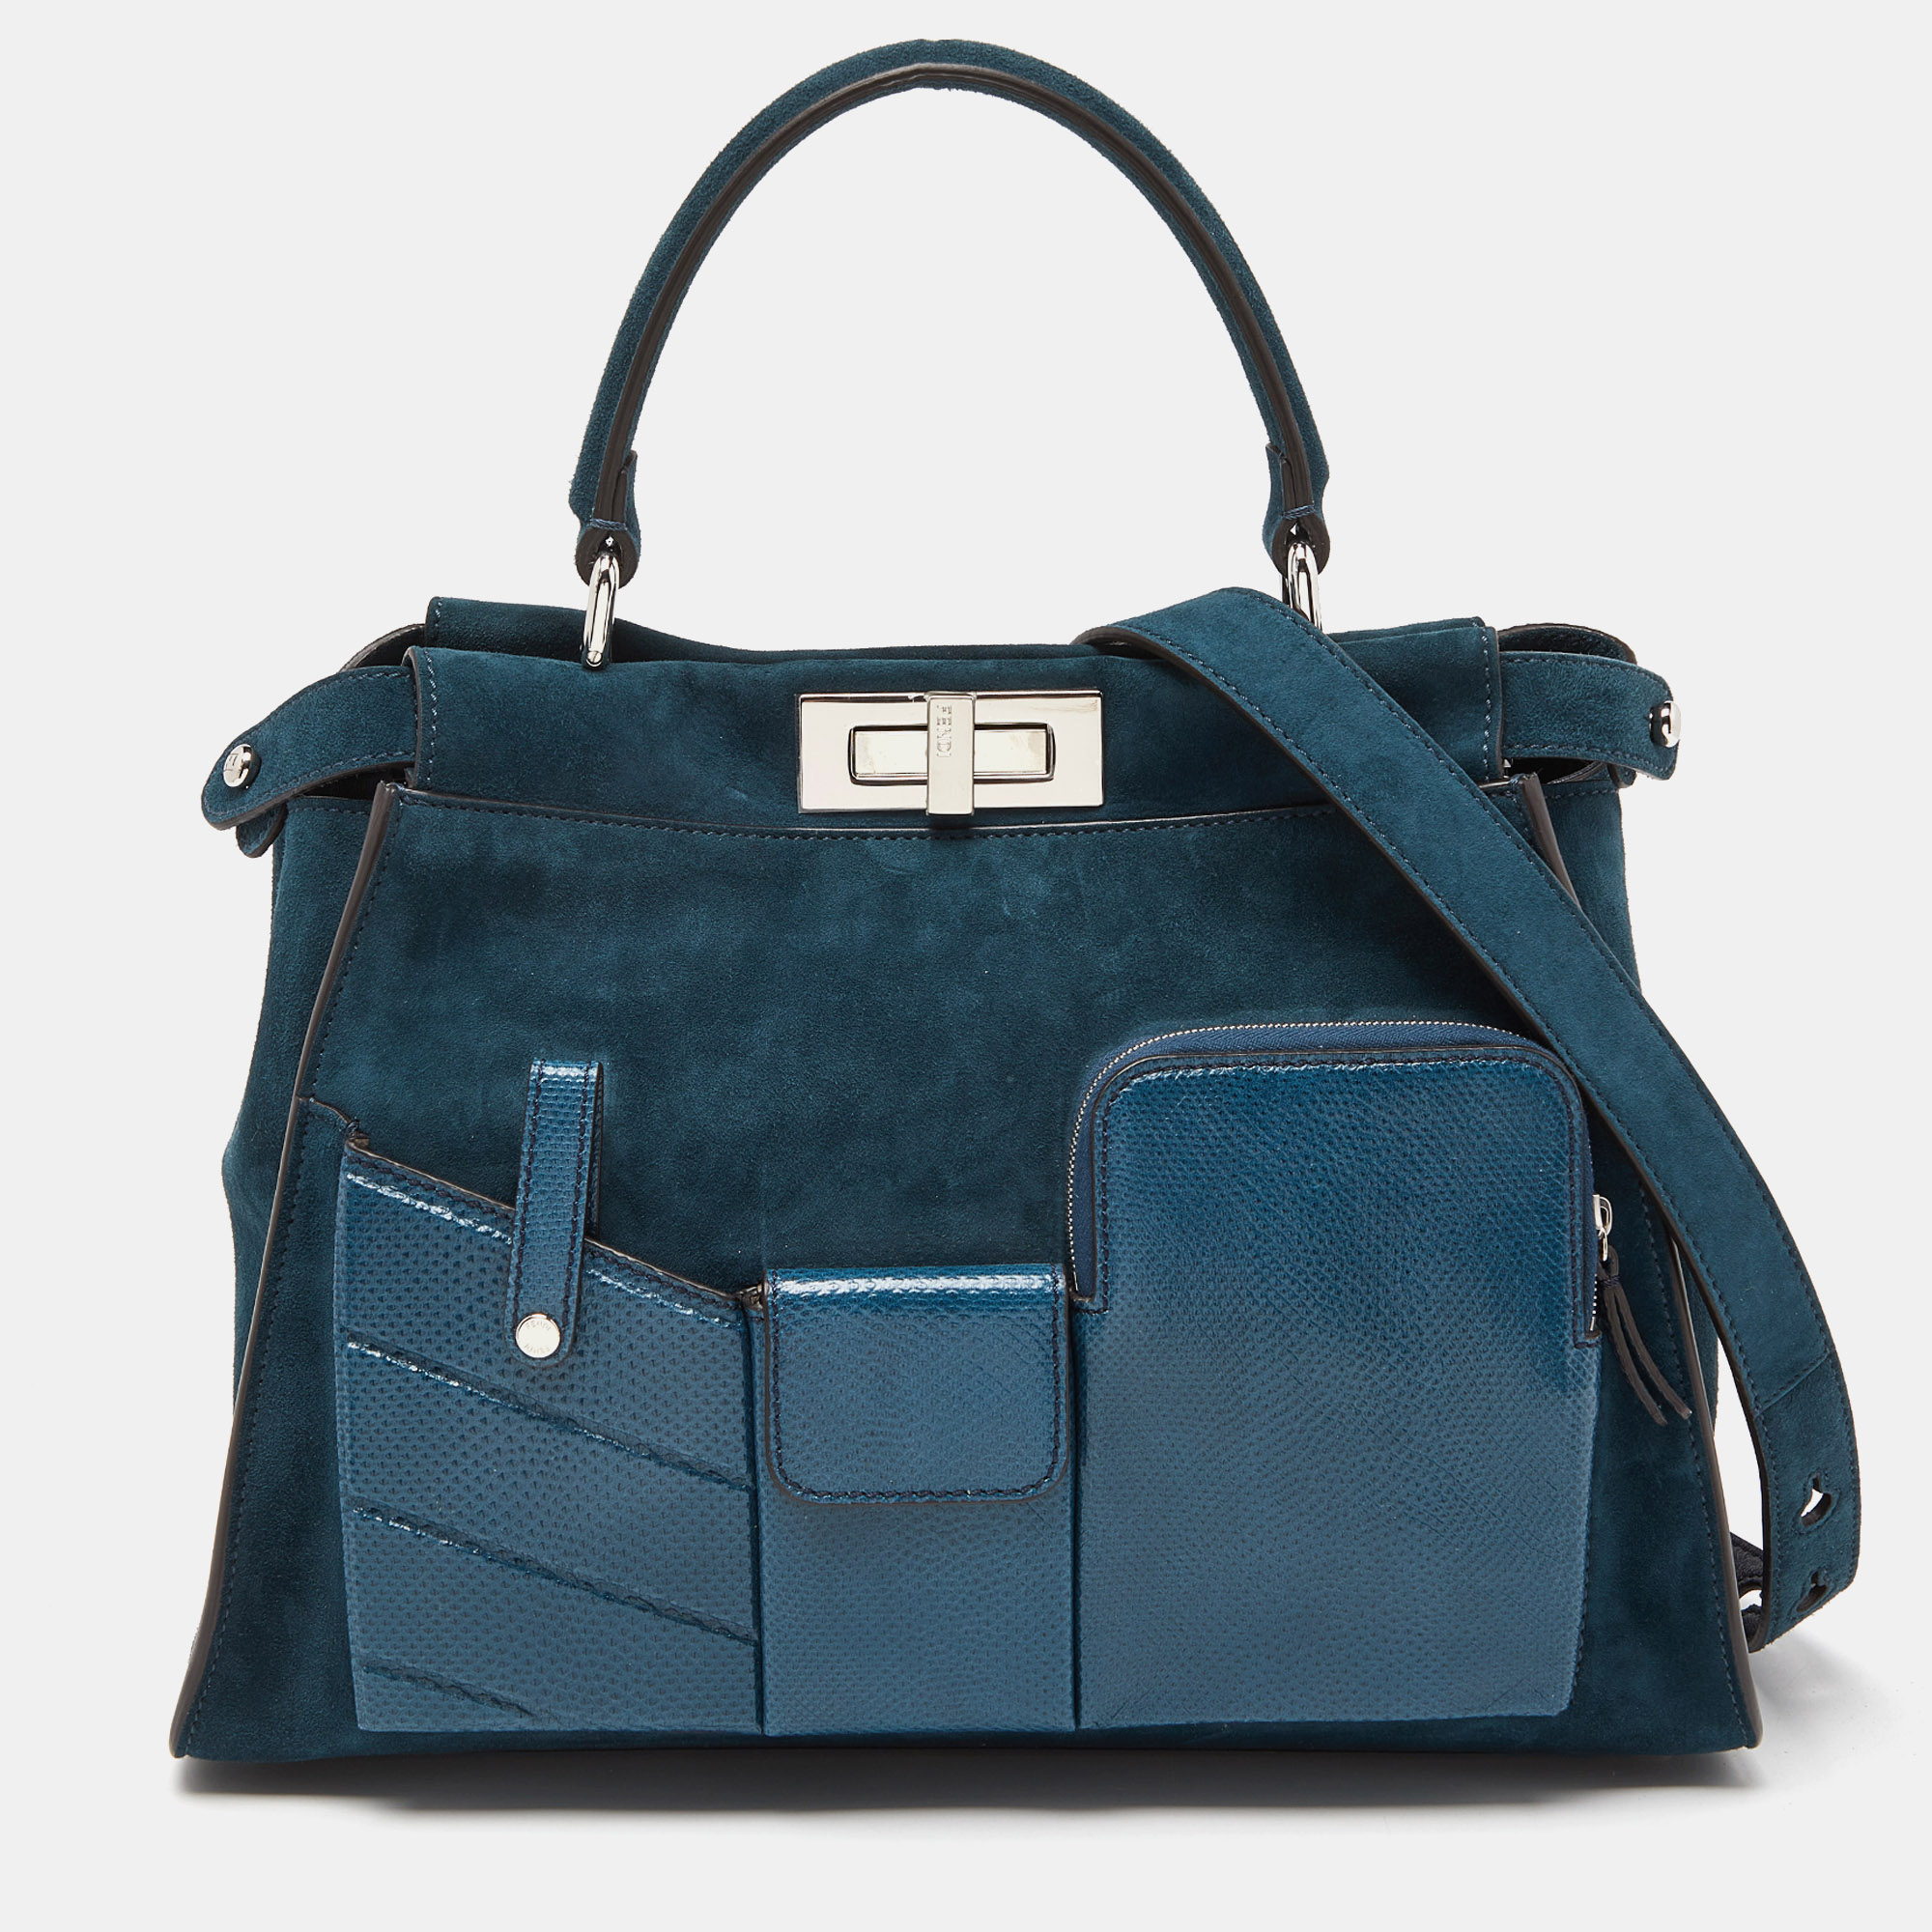 Pre-owned Fendi Blue Watersnake Leather And Suede Regular Peekaboo Top Handle Bag